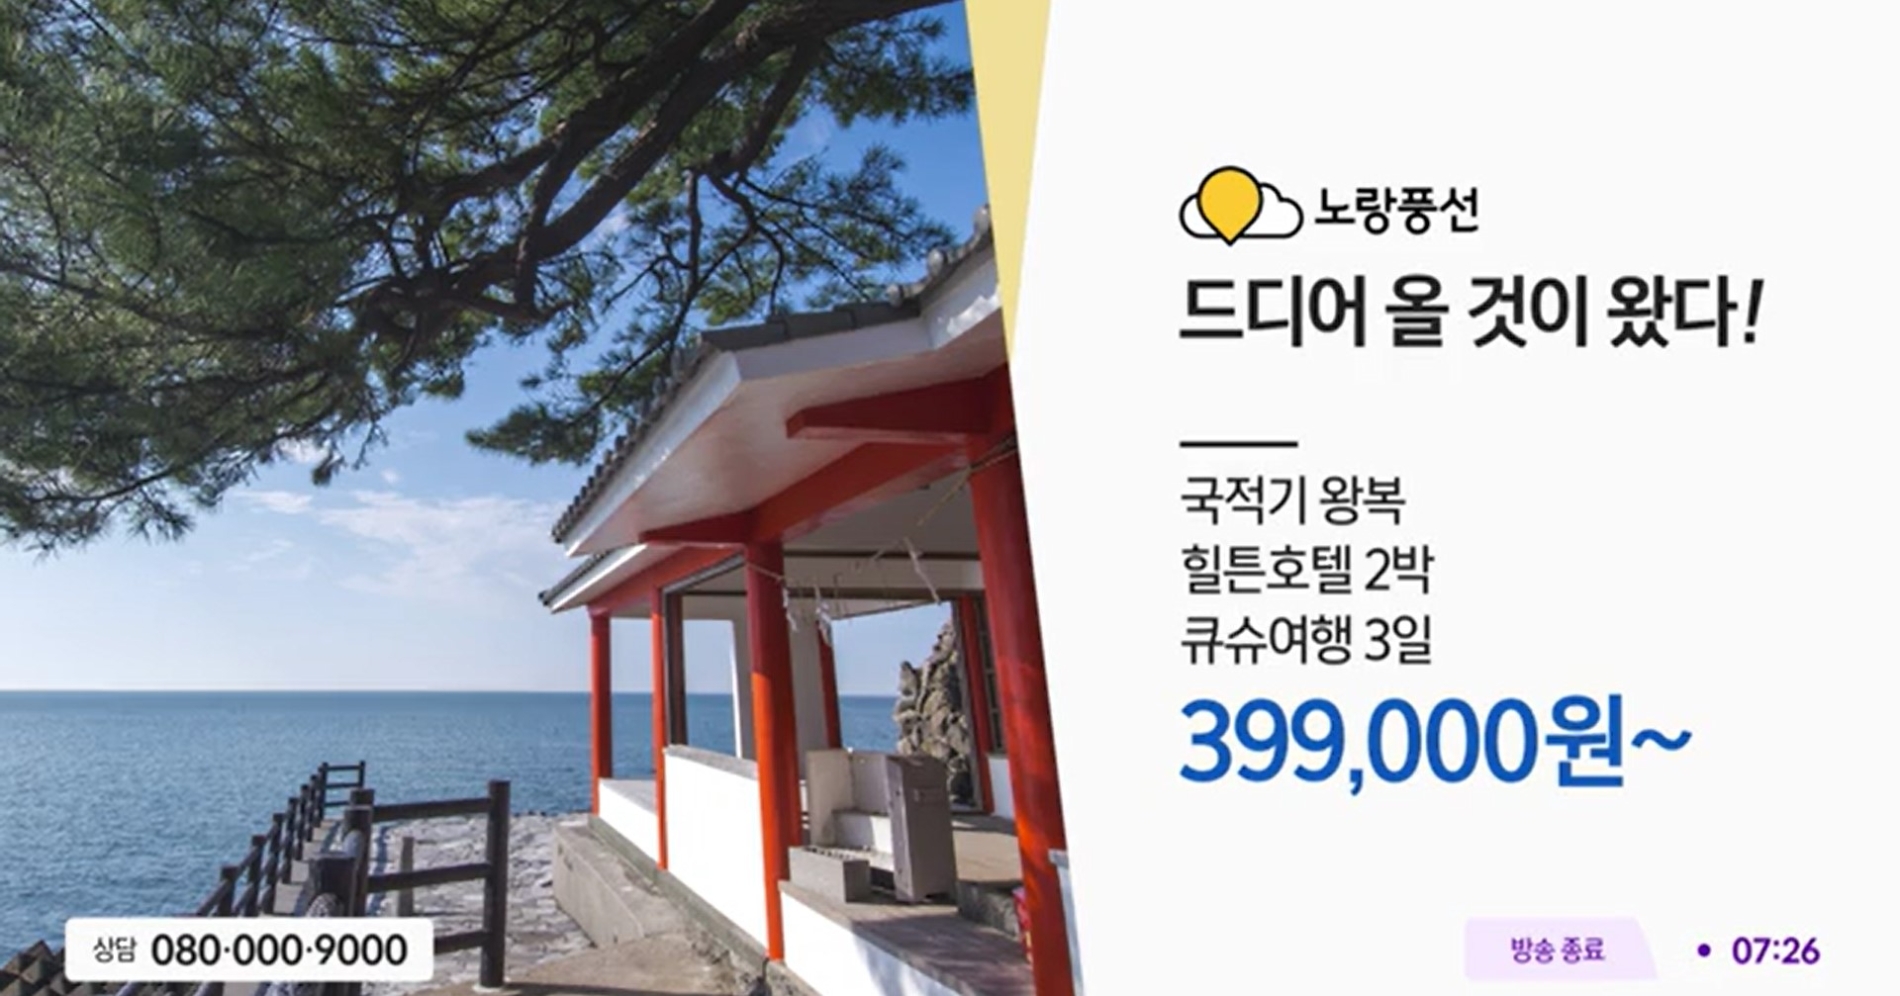 [생활경제 이슈] 노랑풍선, CJ온스타일 통해 판매한 큐슈 상품 3,800건 주문, 50억원 매출 이뤄 外